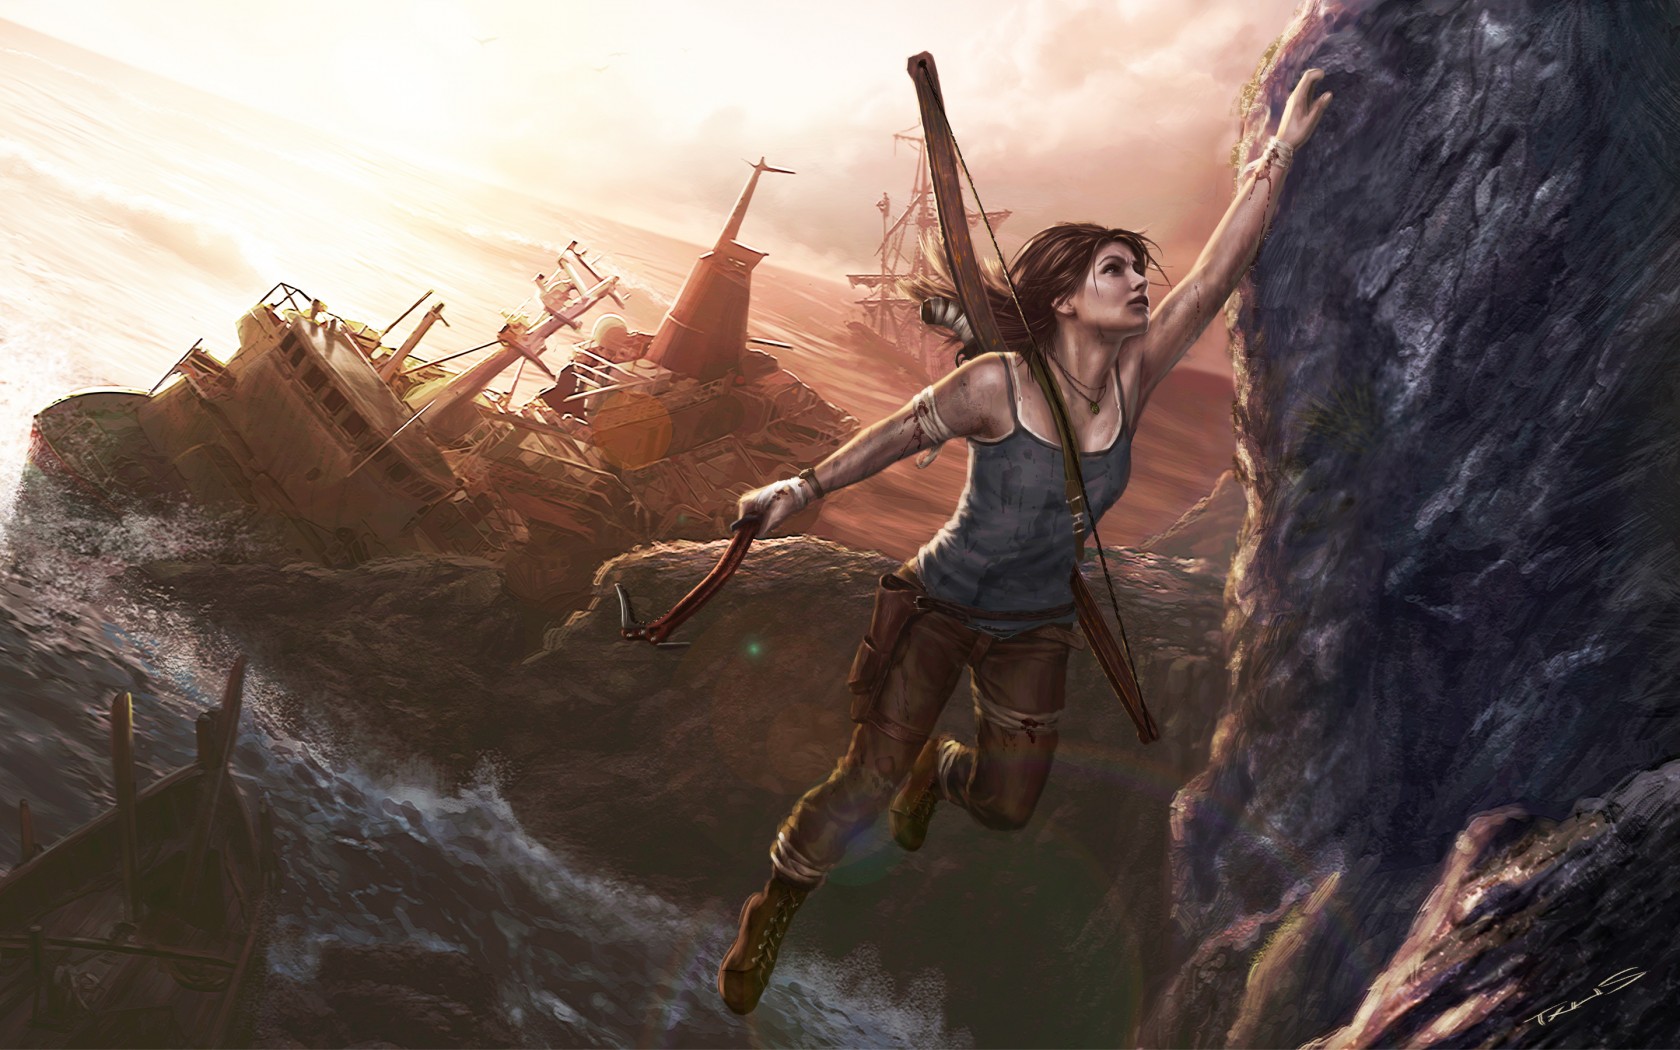 lara croft fondos de pantalla hd,juego de acción y aventura,cg artwork,mitología,captura de pantalla,ilustración